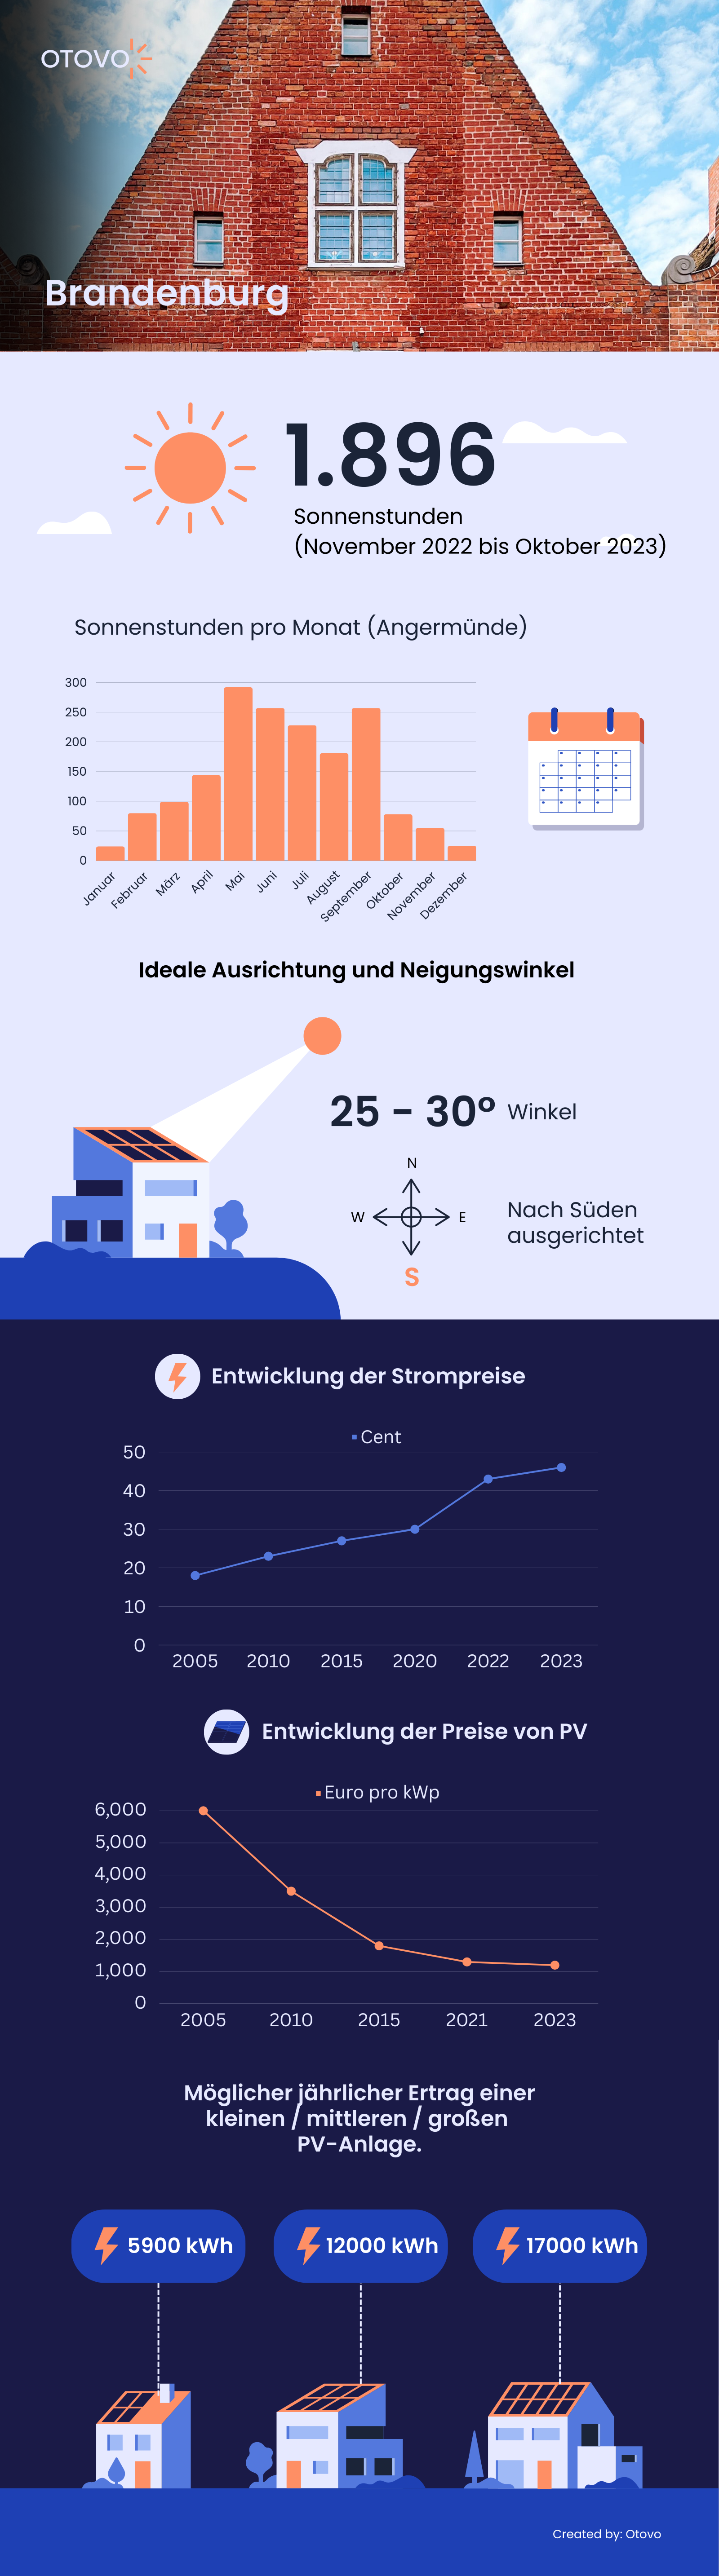 Infografik zu Solaranlagen in Brandenburg